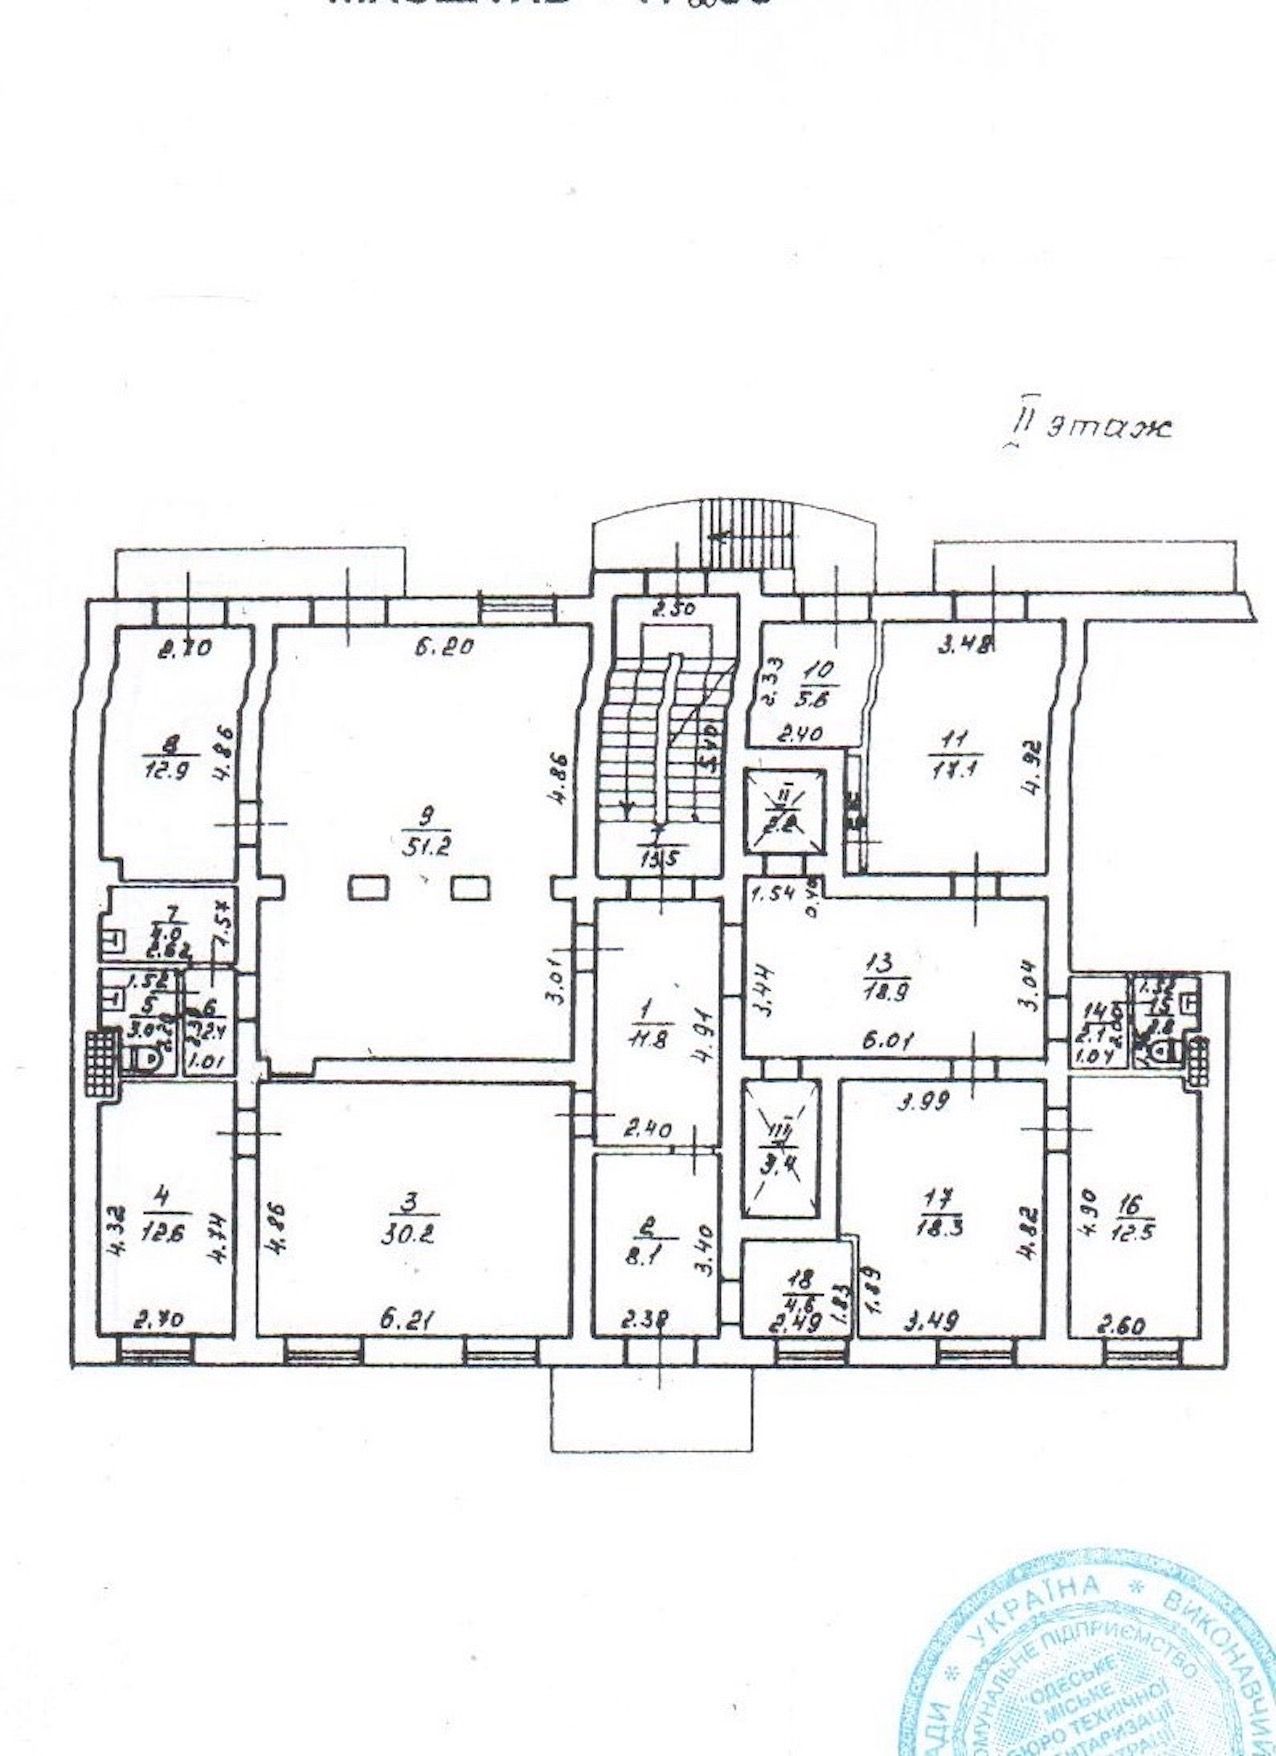 Сдам отдельно стоящее здание на Б.Арнаутской, общ.пл.1950 кв.м